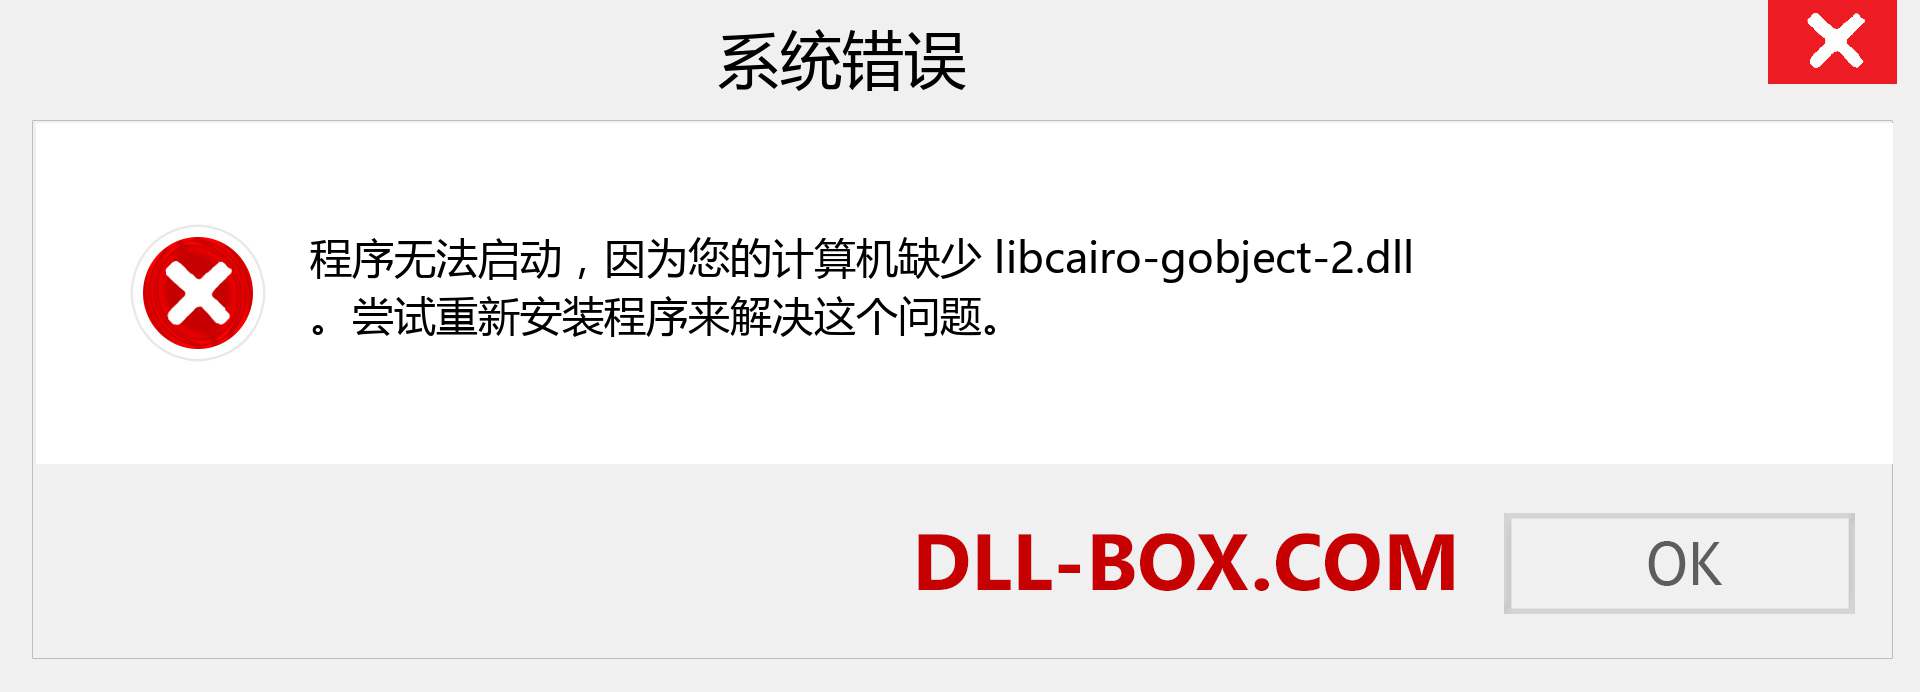 libcairo-gobject-2.dll 文件丢失？。 适用于 Windows 7、8、10 的下载 - 修复 Windows、照片、图像上的 libcairo-gobject-2 dll 丢失错误